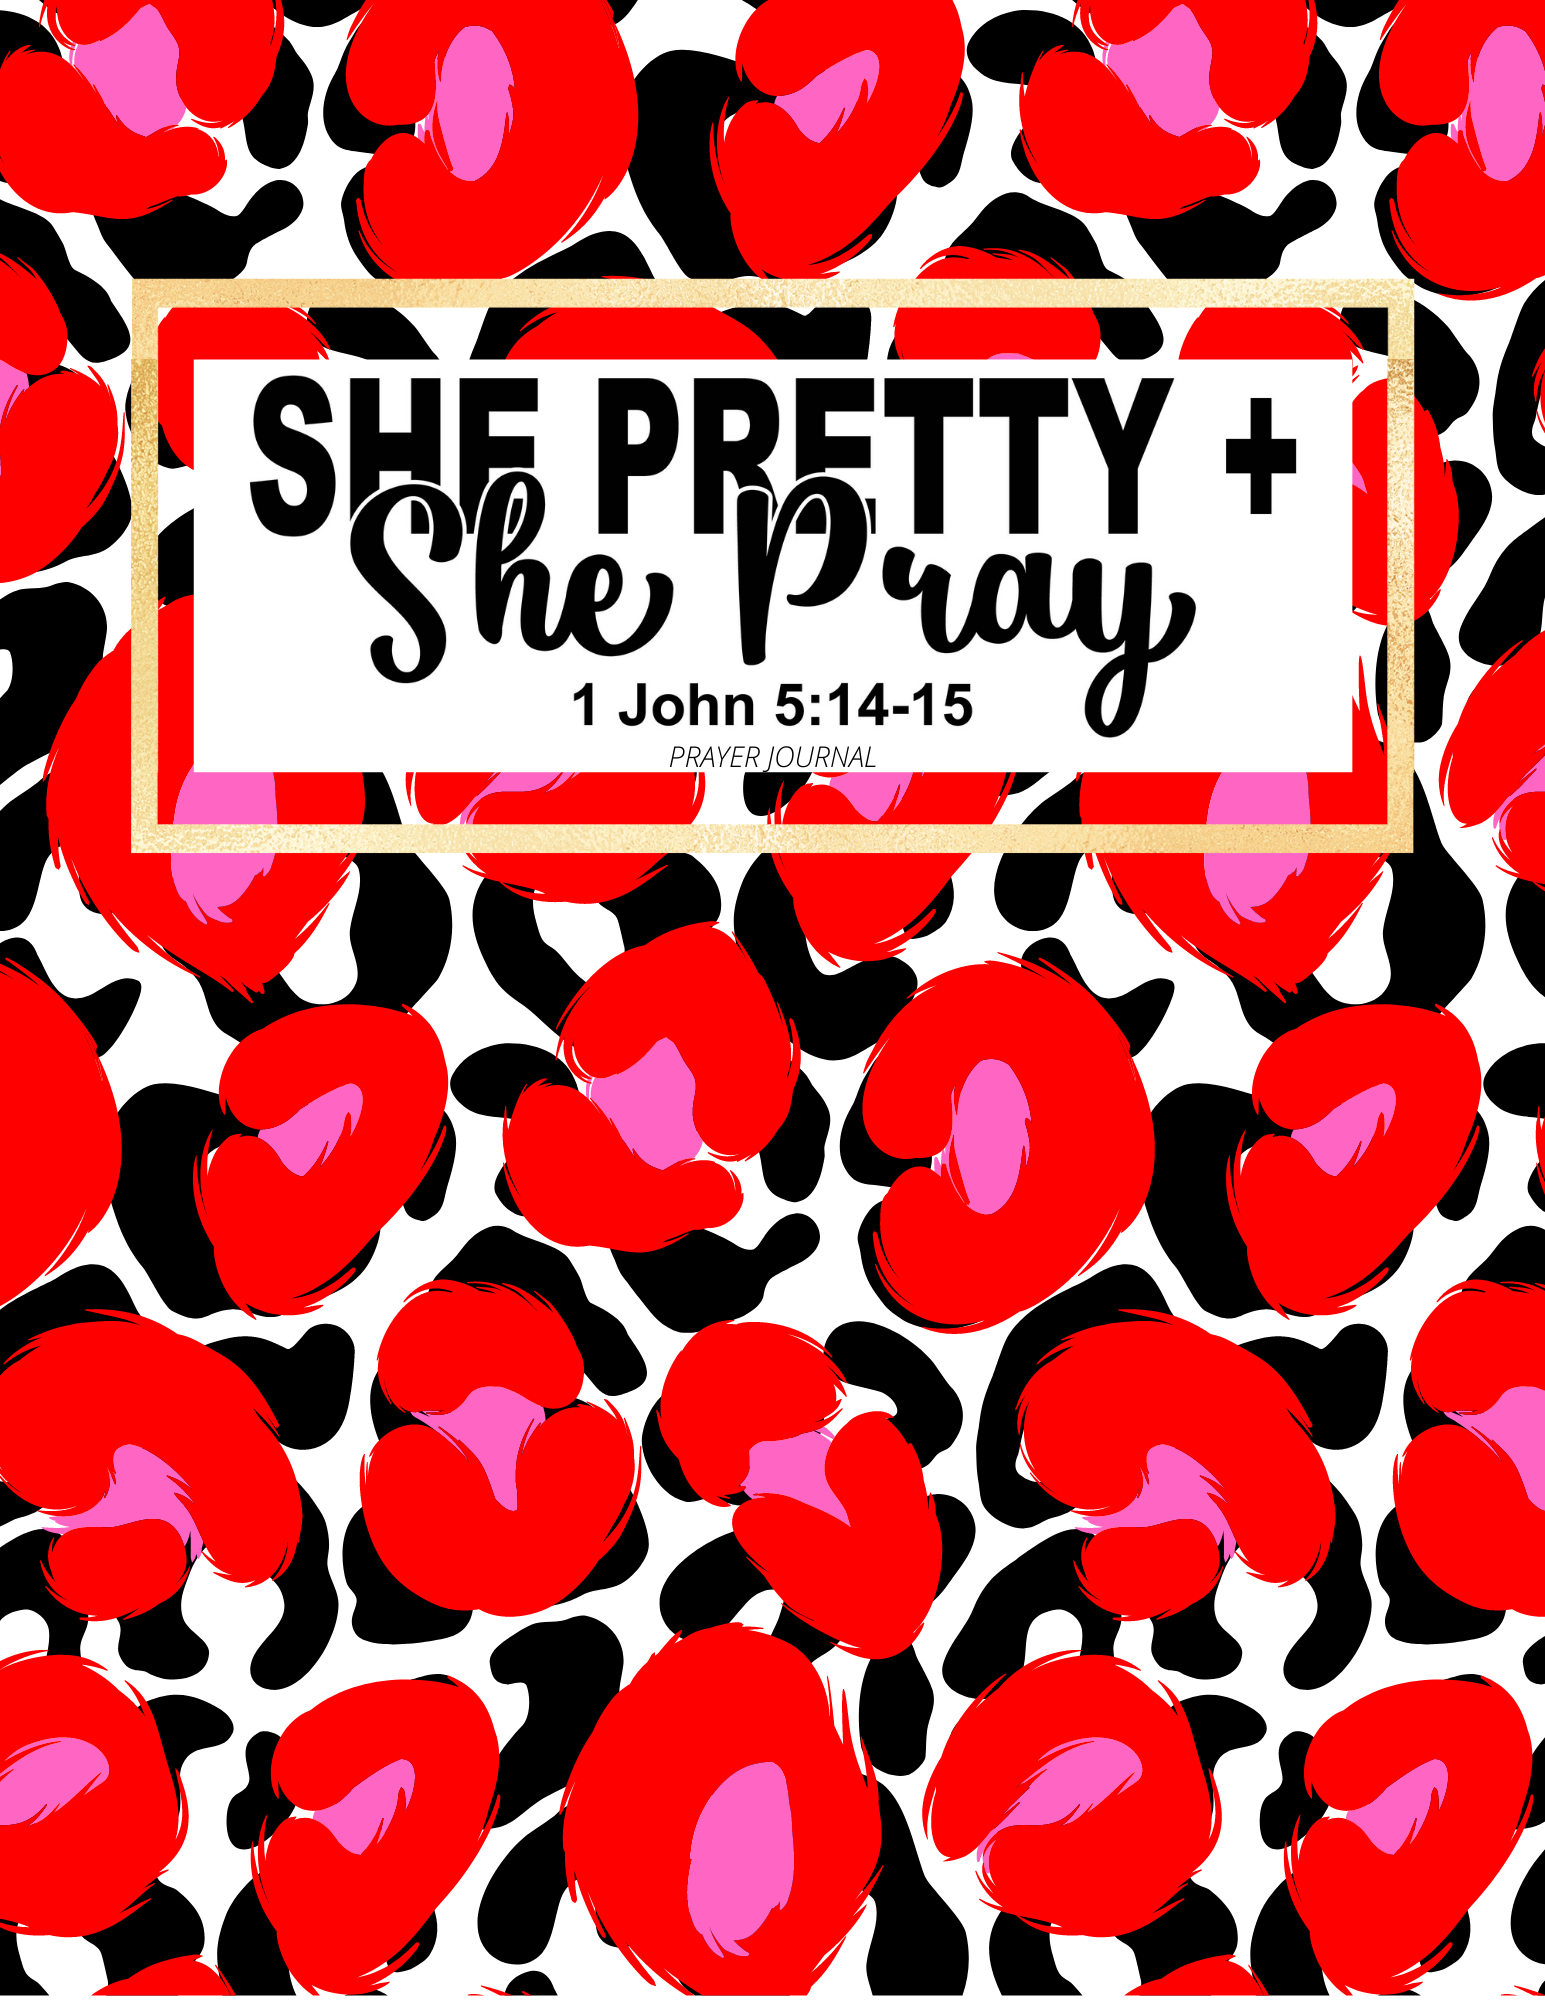 NEW: She Pretty + She Pray Prayer Journal